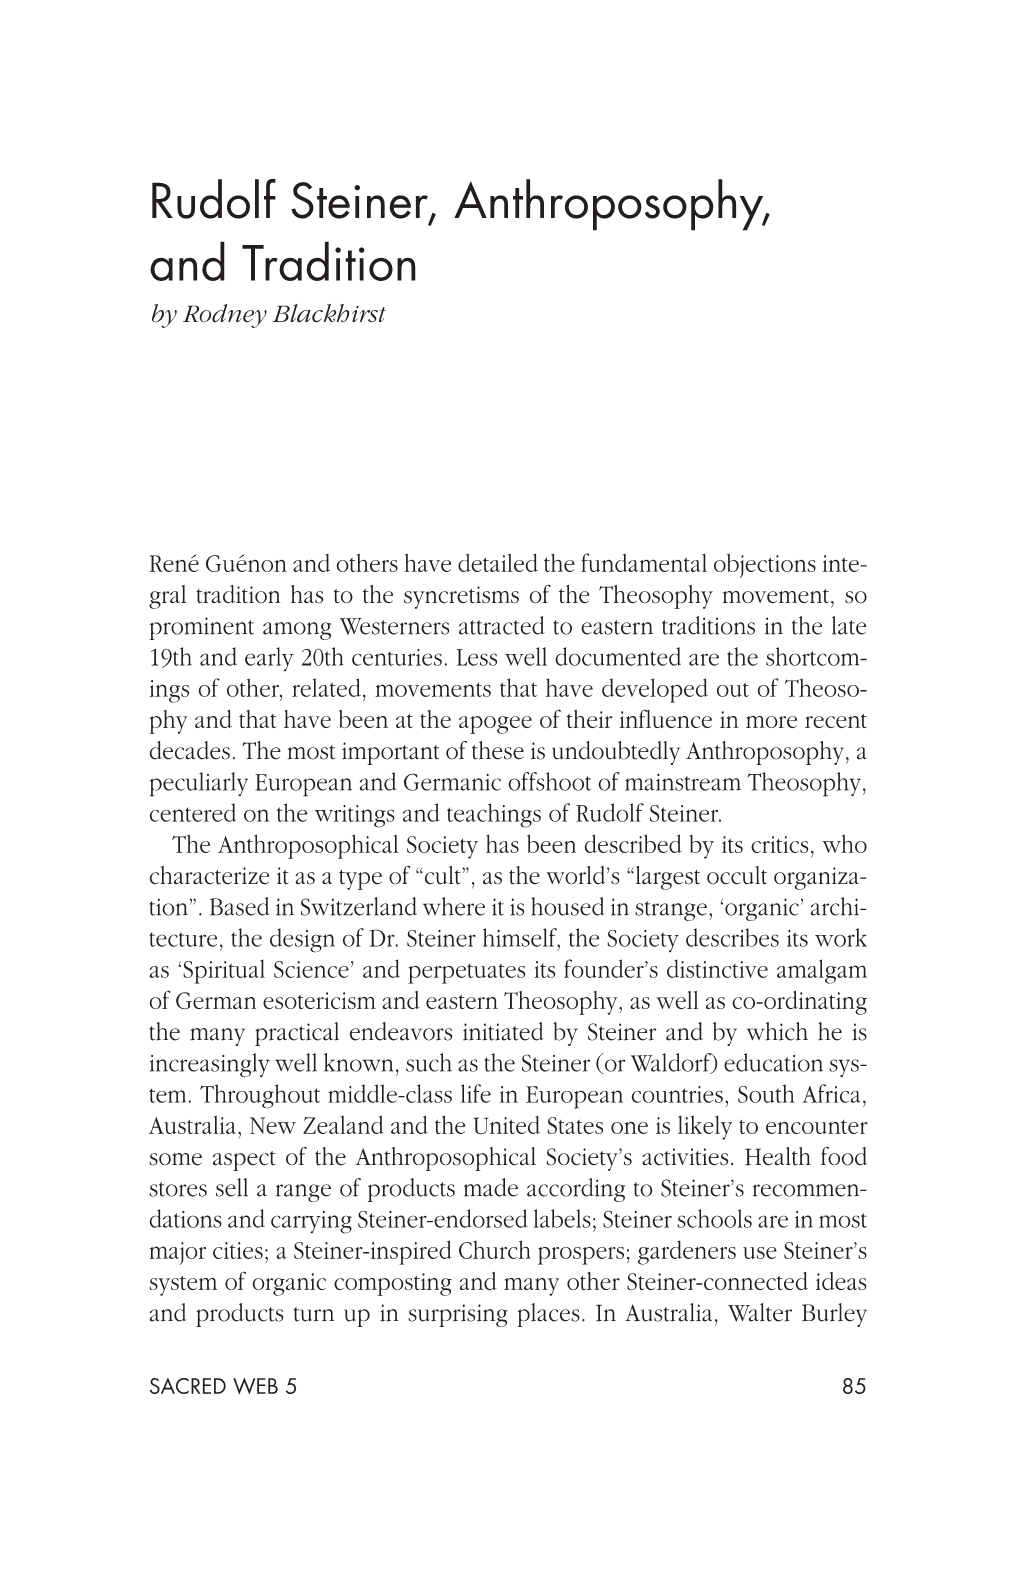 Rudolf Steiner, Anthroposophy, and Tradition by Rodney Blackhirst